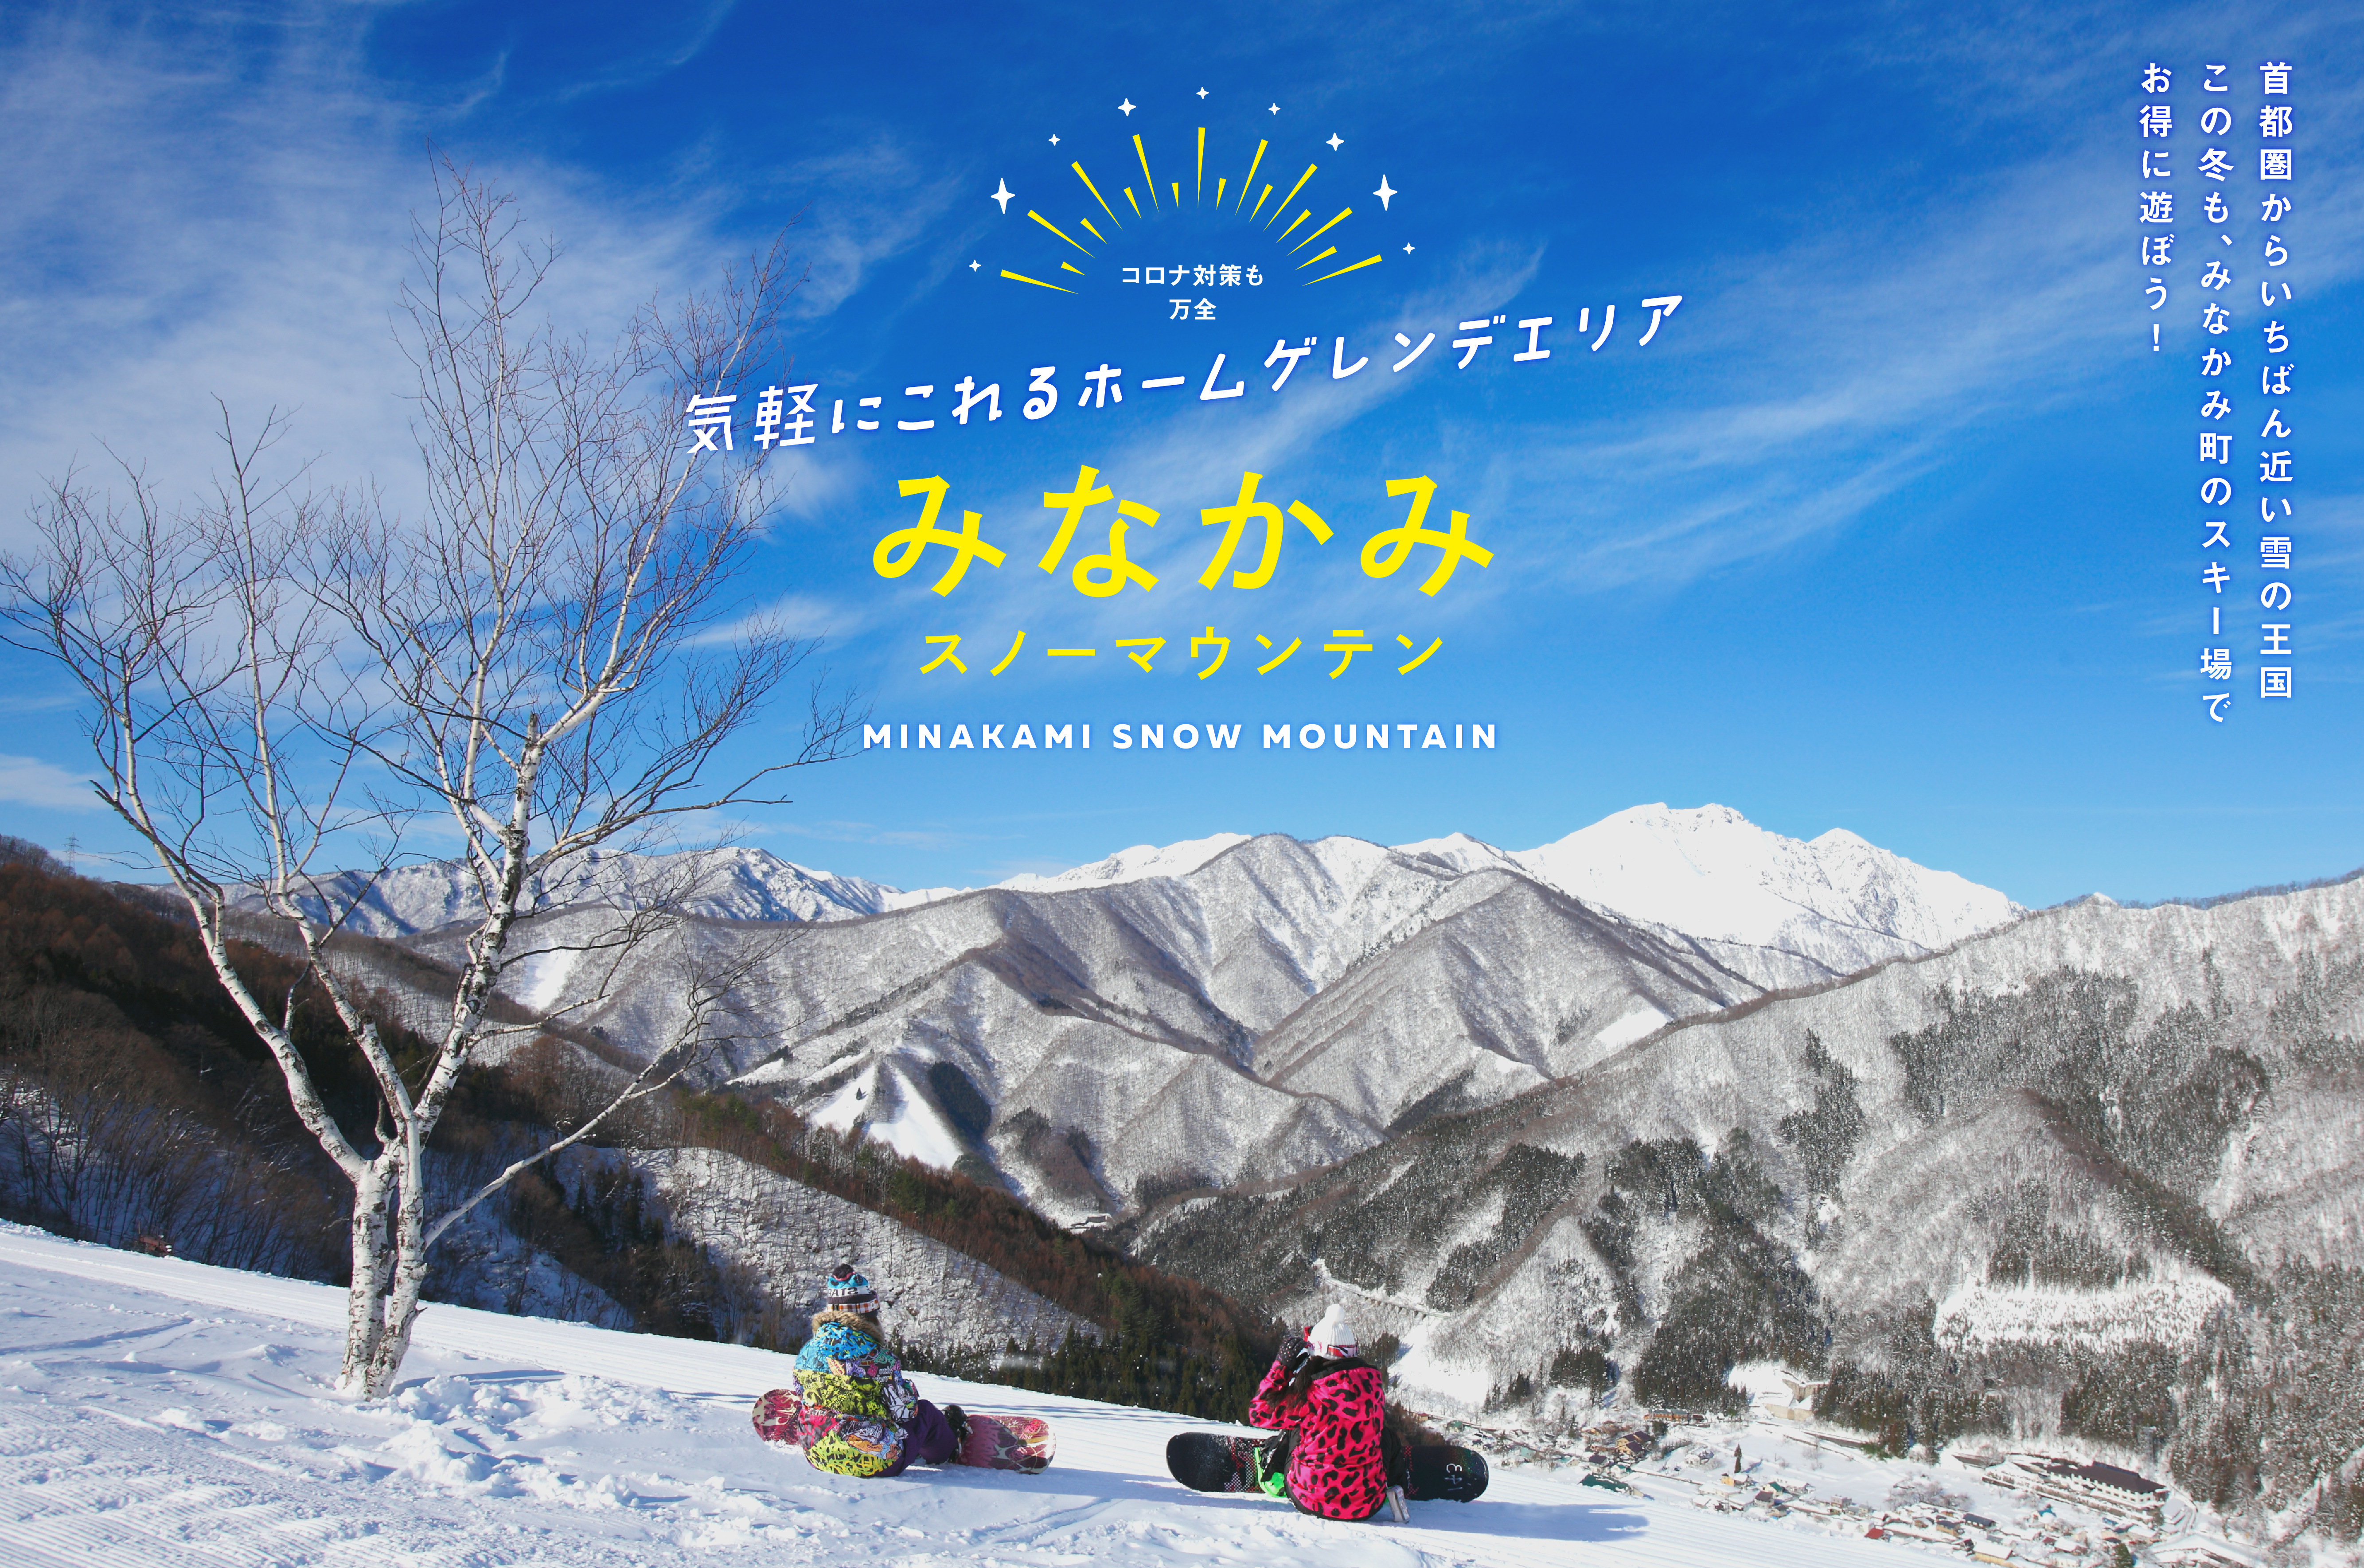 みなかみ町スキー場連絡協議会 MINAKAMI SKI スキーをするなら温泉も楽しめるみなかみ町へ